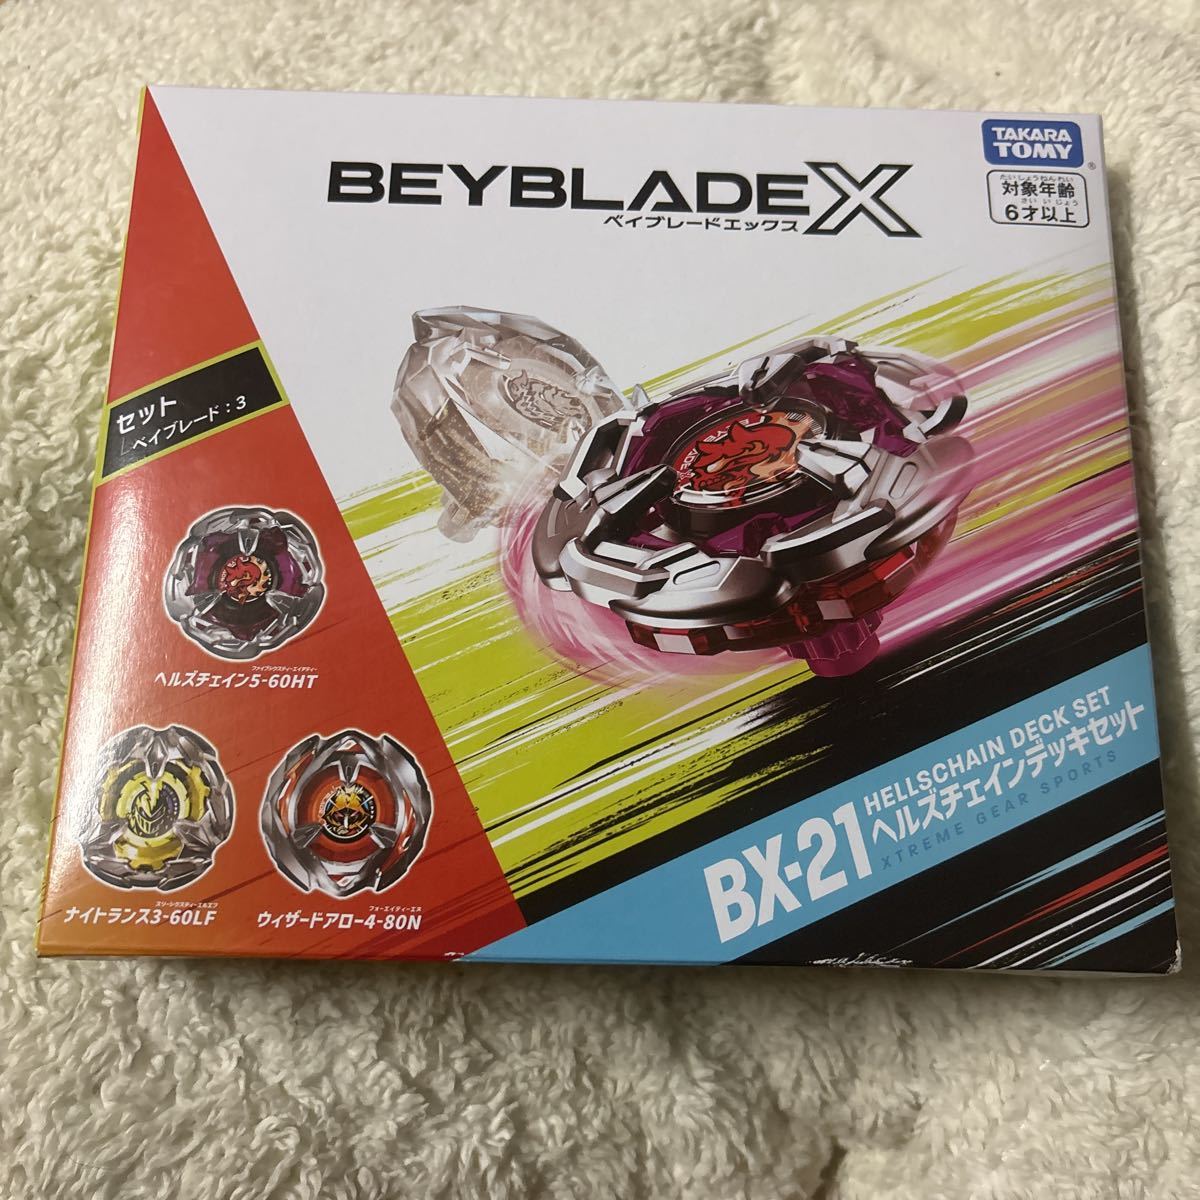 【送料無料】BEYBLADE X BX-21 ヘルズチェインデッキセット　5-60HT_画像1